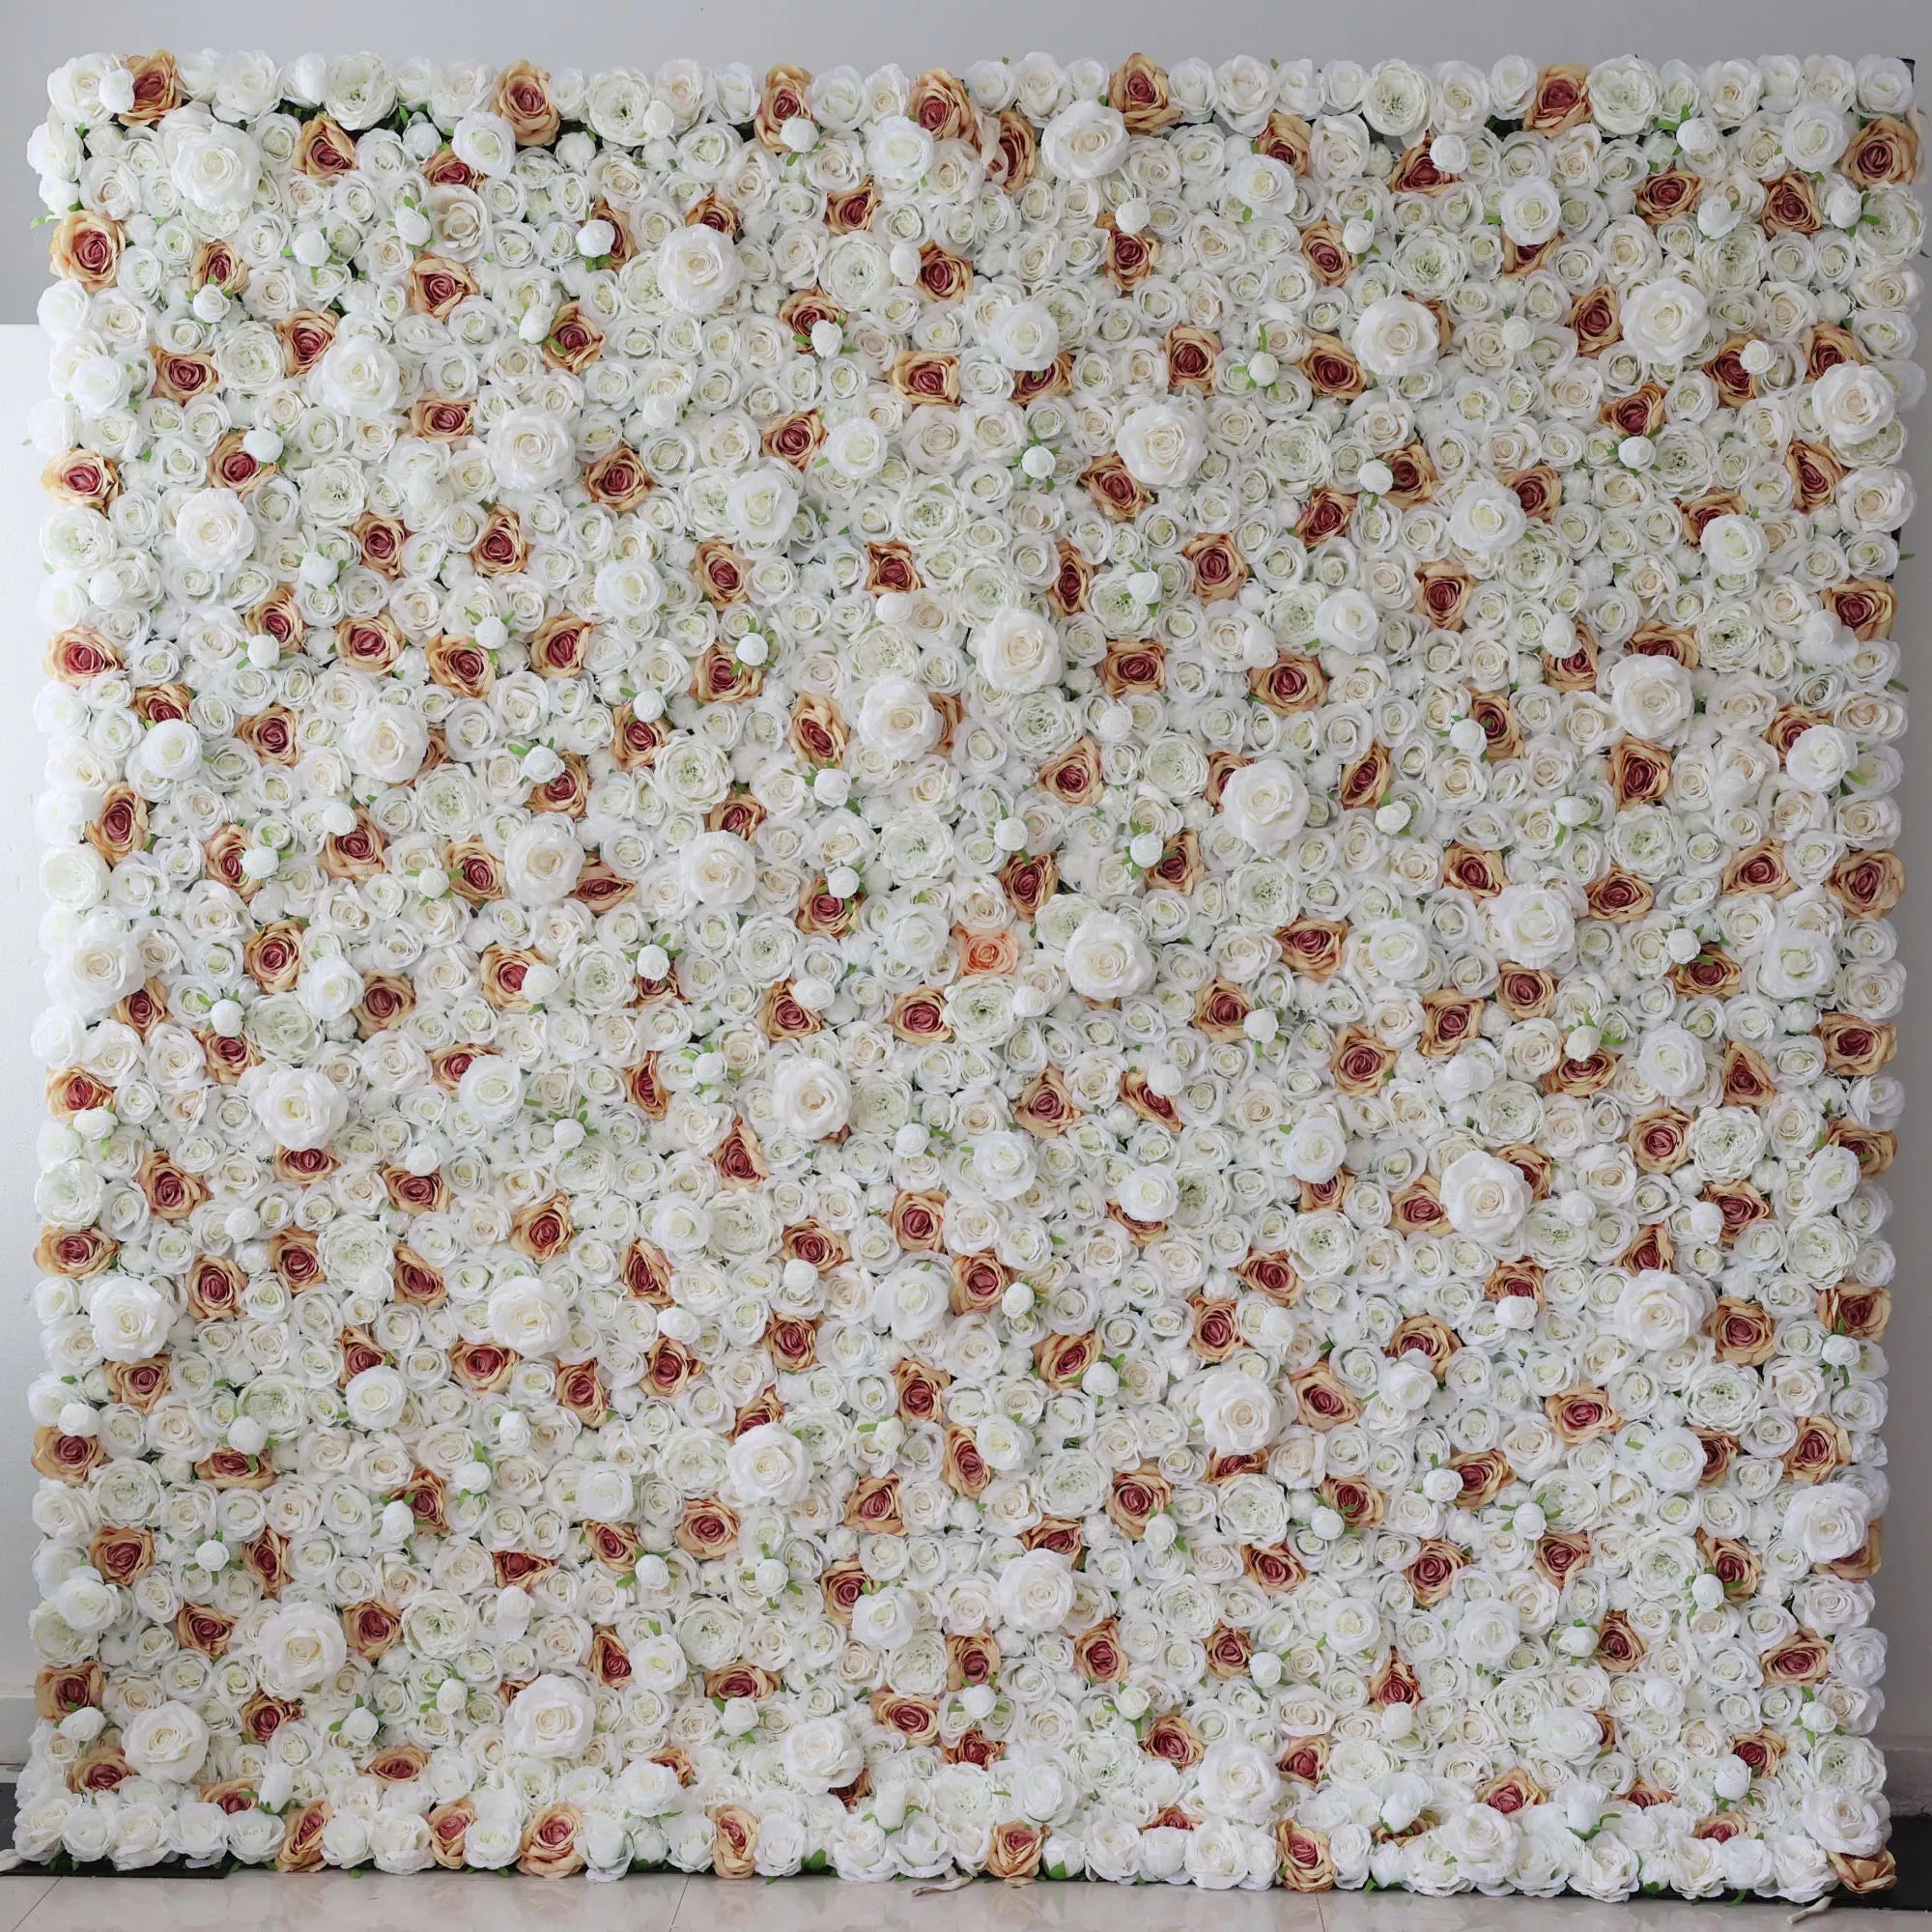 Valar Flowers dévoile : Elysian Meadows – Un mélange majestueux de roses en tissu blanc et pêche clair – Mur floral par excellence pour les mariages, les célébrations et les décors intérieurs sophistiqués-VF-218